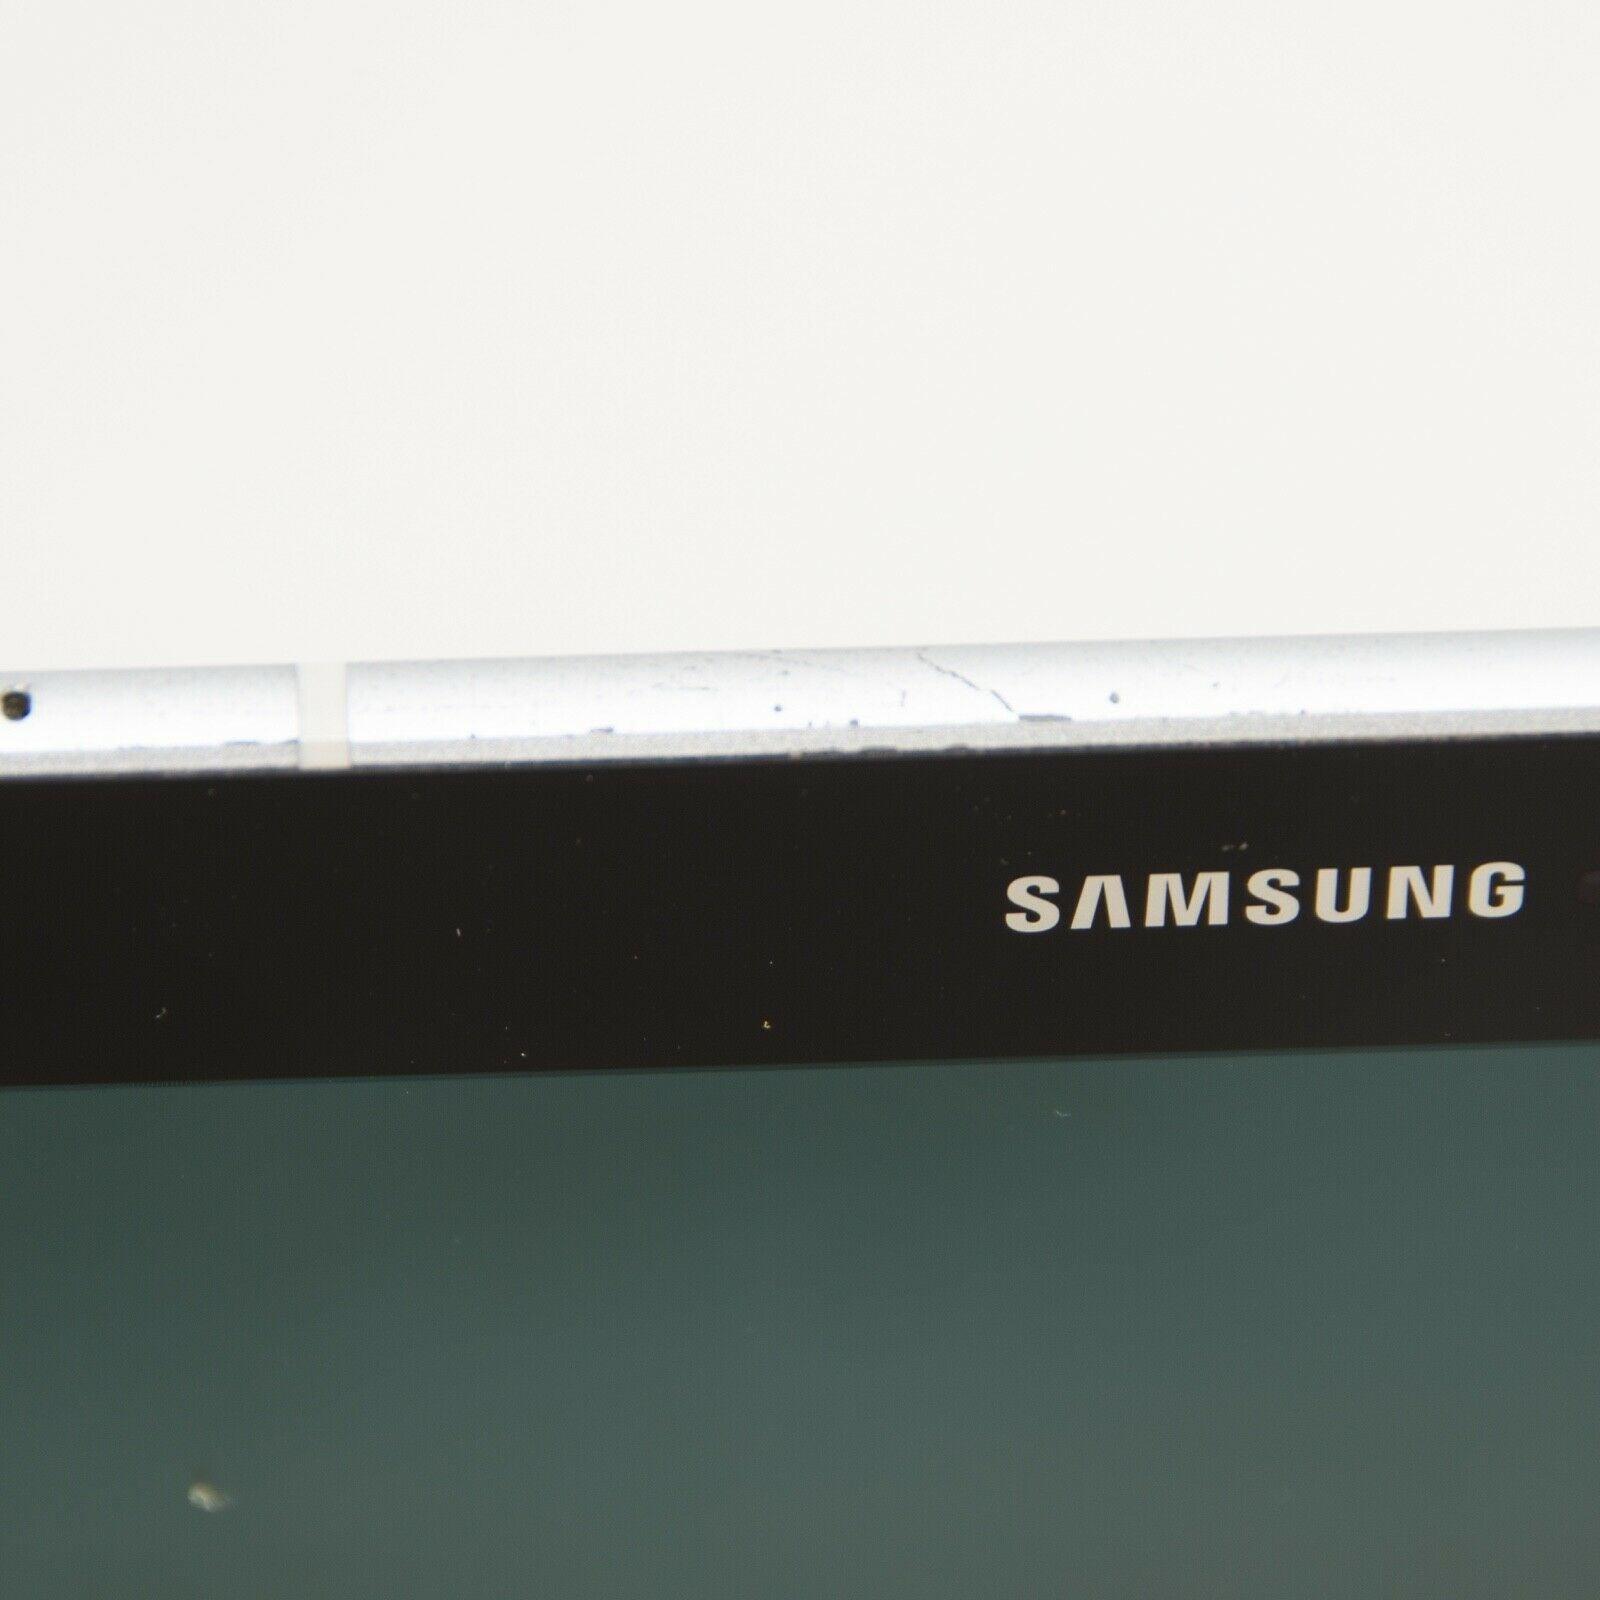 Samsung Galaxy Tab S3 32GB, Wi-Fi, 9.7in - Silver - ipawnishop.com